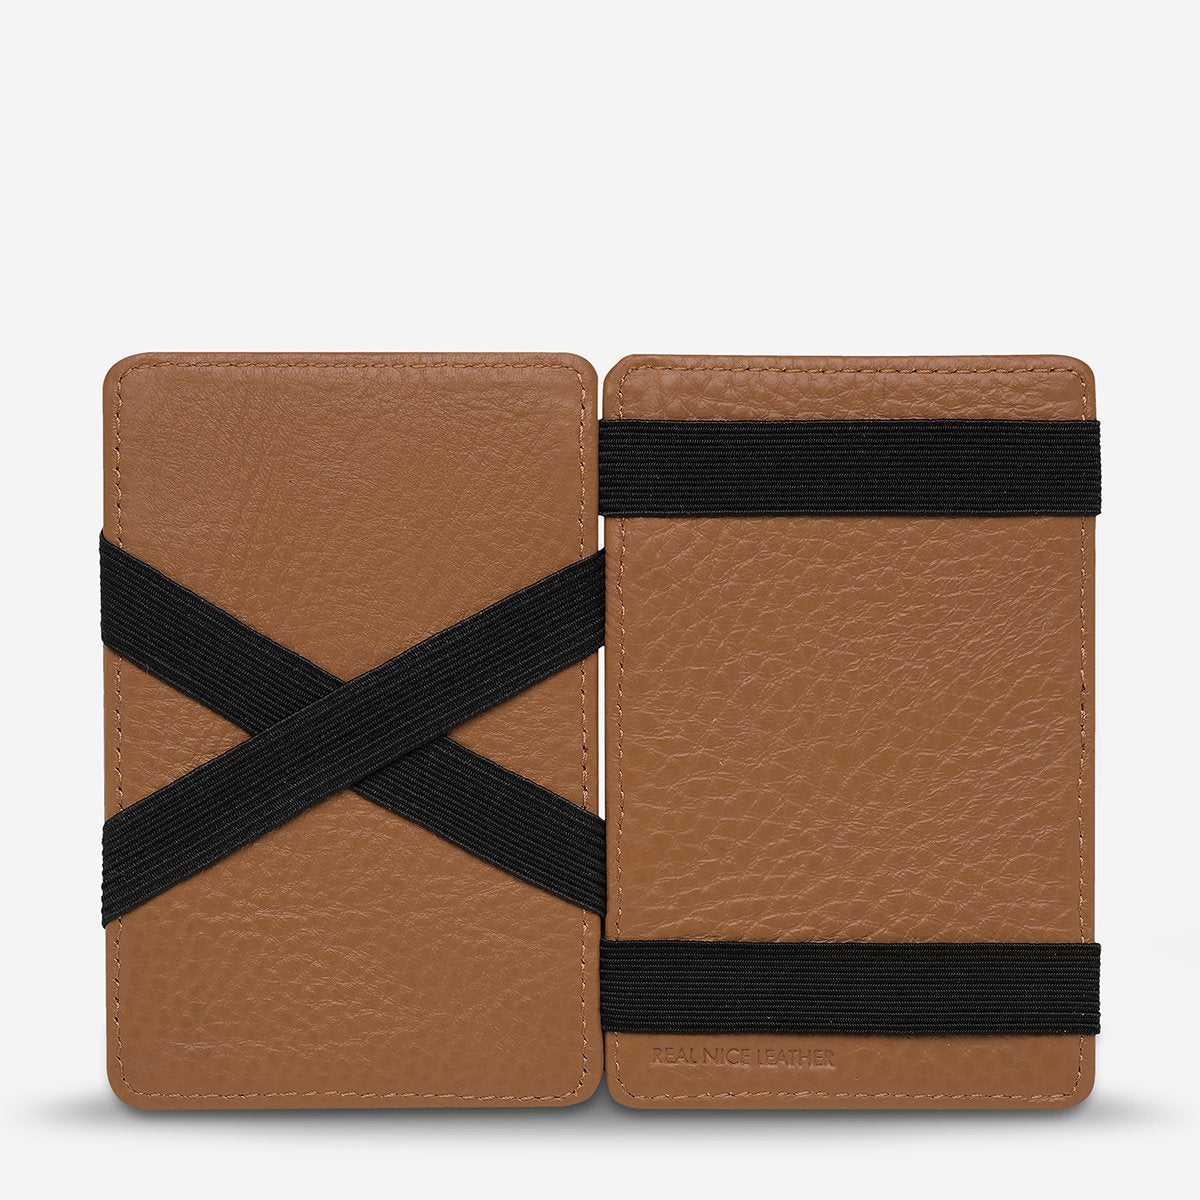 Flip Leather Wallet in Tan